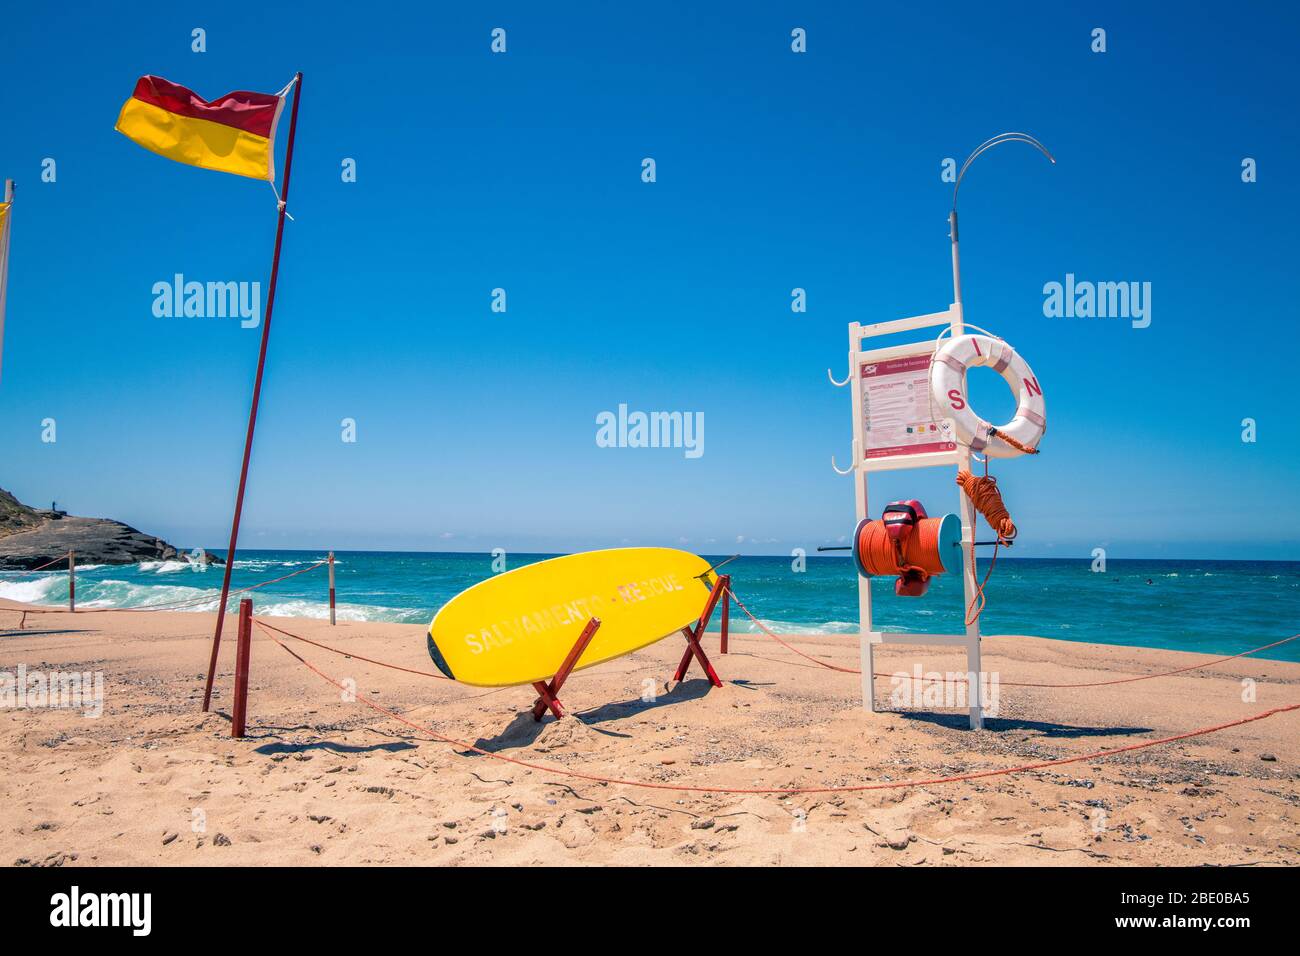 Stazione dei bagnini sulla spiaggia di Praia Das Macas Portugal con bandiera e attrezzature di sicurezza Foto Stock